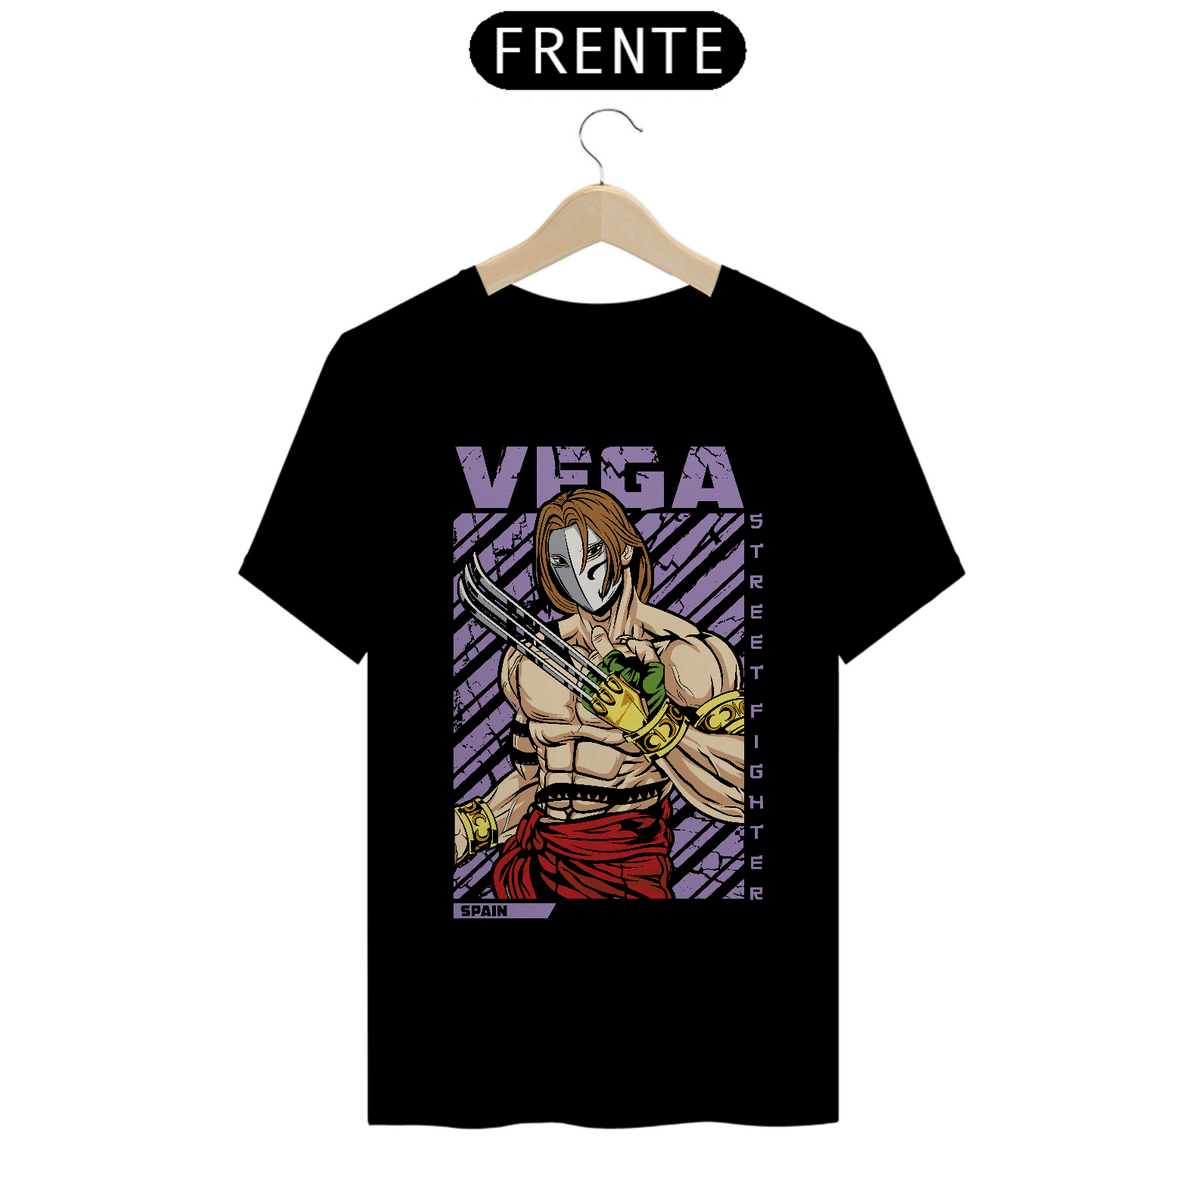 Nome do produto: Camiseta Vega SF2